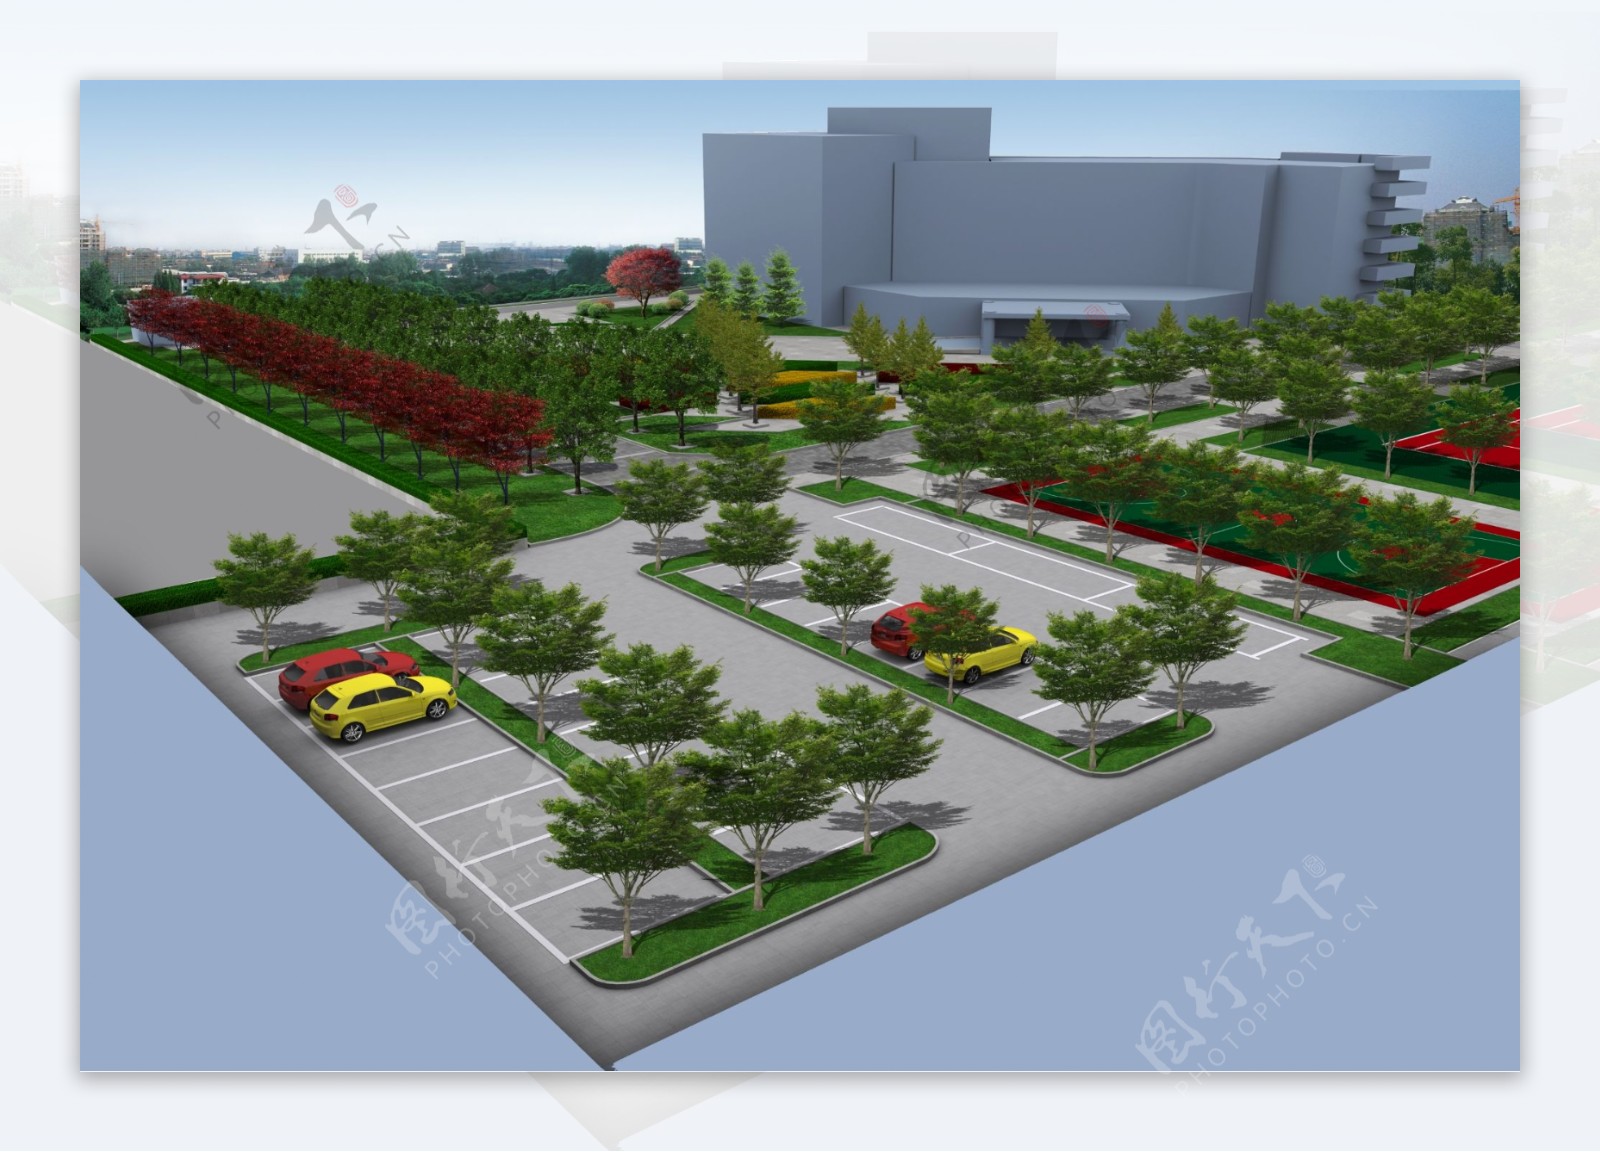 停车场周边绿地绿化改造效果图psd源文件下载